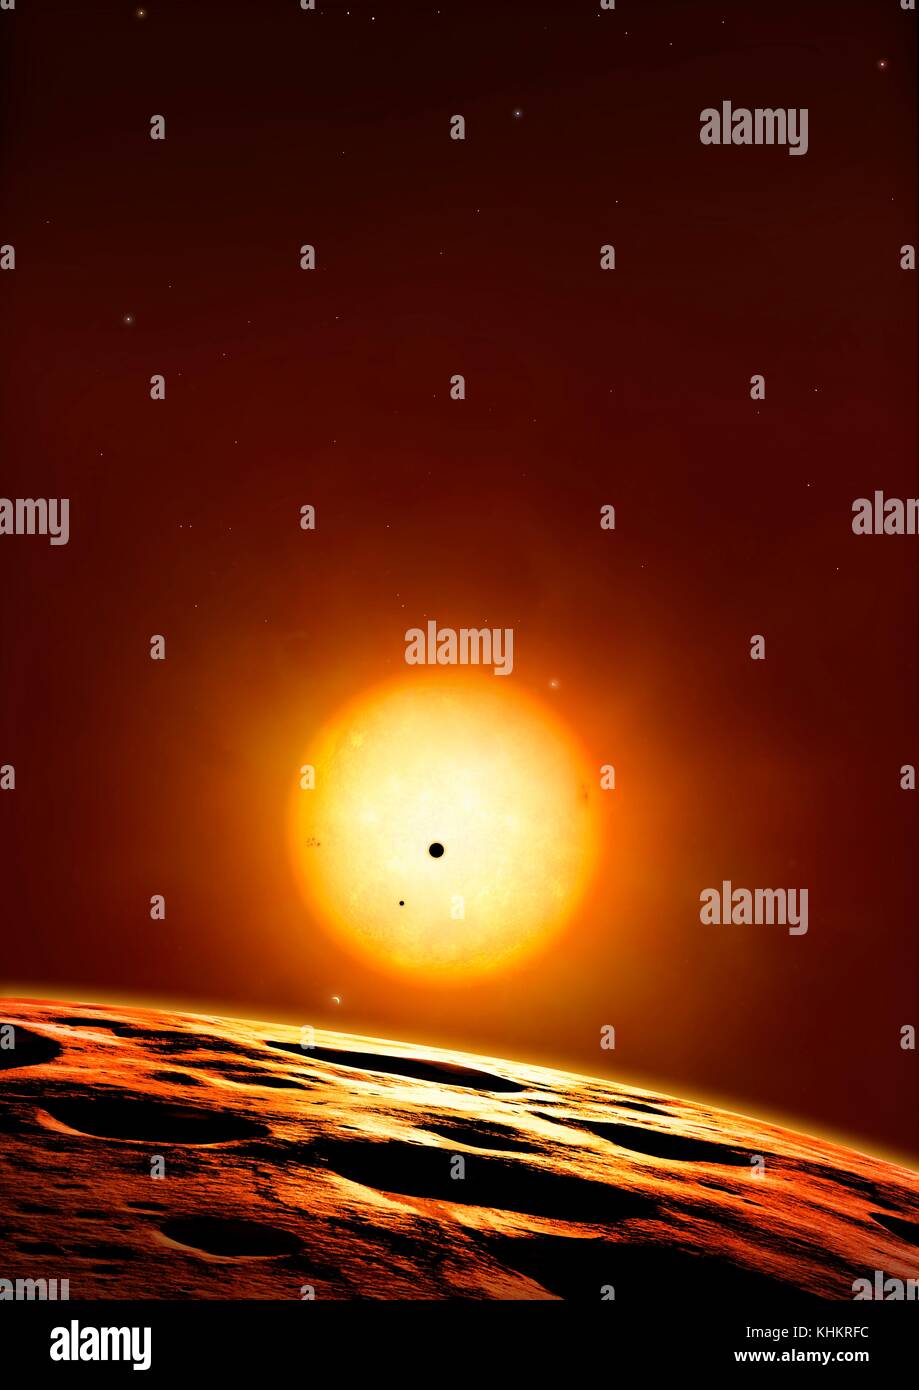 Kepler 444 sistema de planetas,ilustración.Kepler 444 es una antigua estrella,estimado en unos 11.200 millones de años, más del doble de la edad del Sun.es 117 años luz de la Tierra en la constelación de Lyra.En 2015, los astrónomos confirmó que este fresco star (5000 grados Kelvin) es anfitrión de al menos cinco planetas rocosos, variando de 0,4 a 0,7 veces el radio de la tierra ,o entre los tamaños de Marte y Mercurio.Sin embargo,los planetas están en lugares poco propicios para la vida, como son todos apiñados en órbitas muy estrecha. Foto de stock